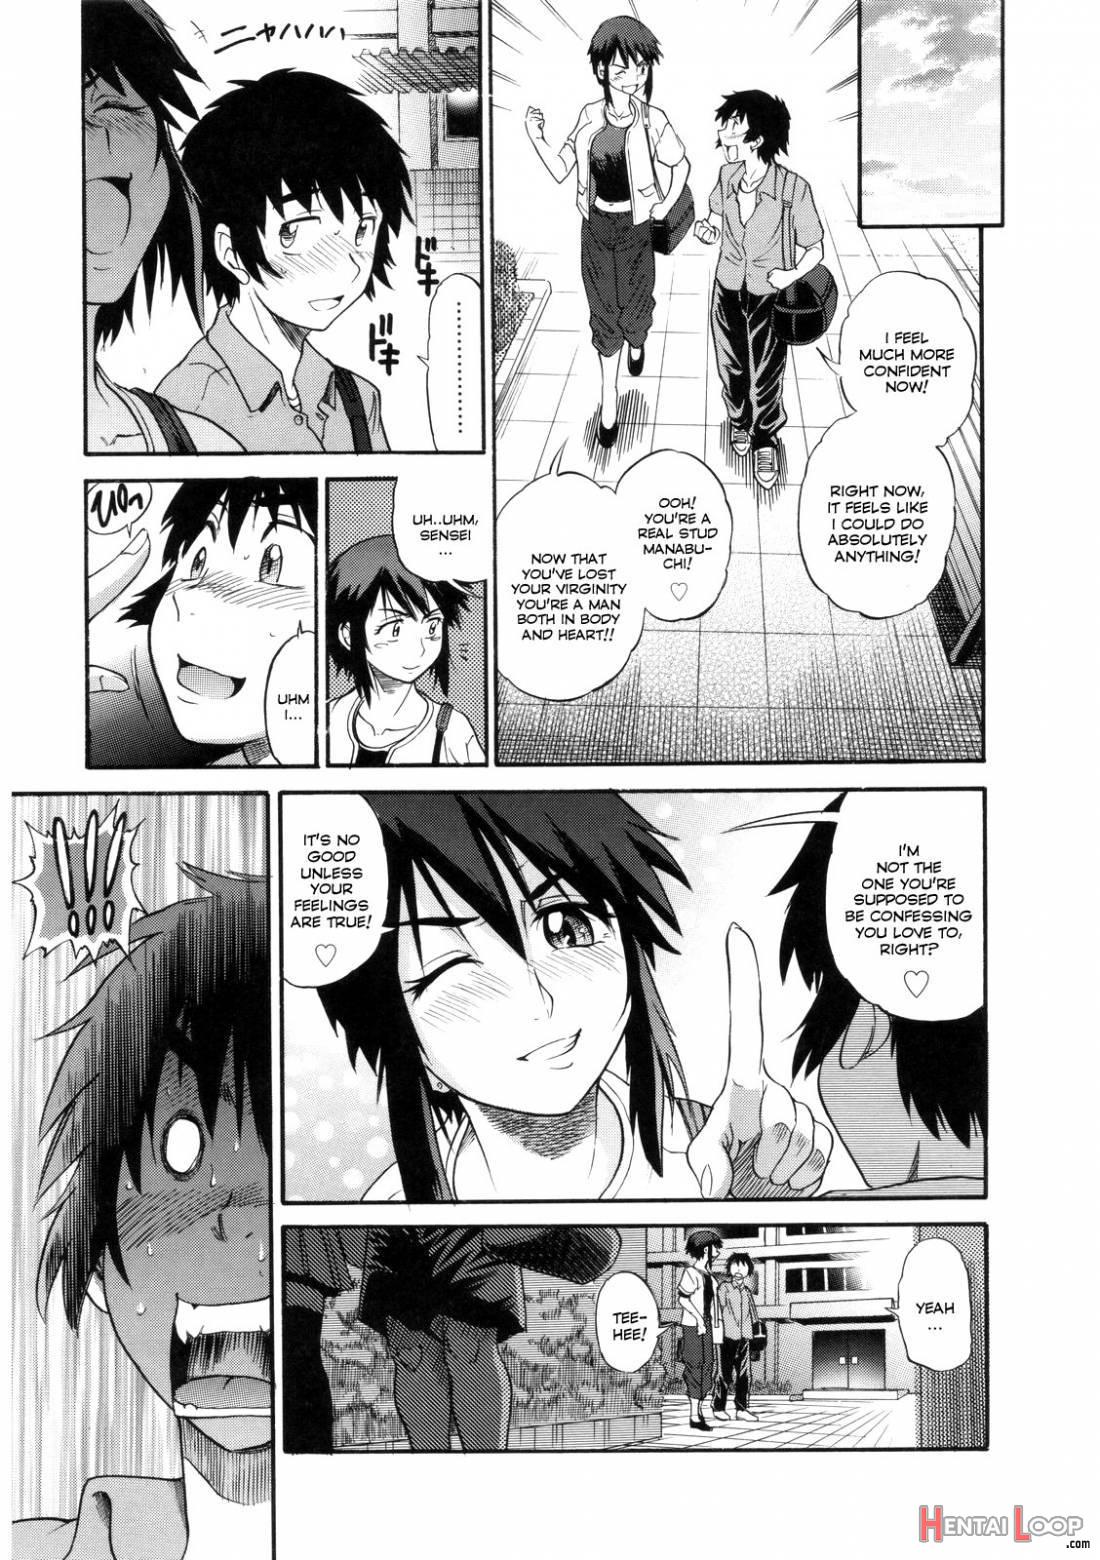 B-Chiku page 113